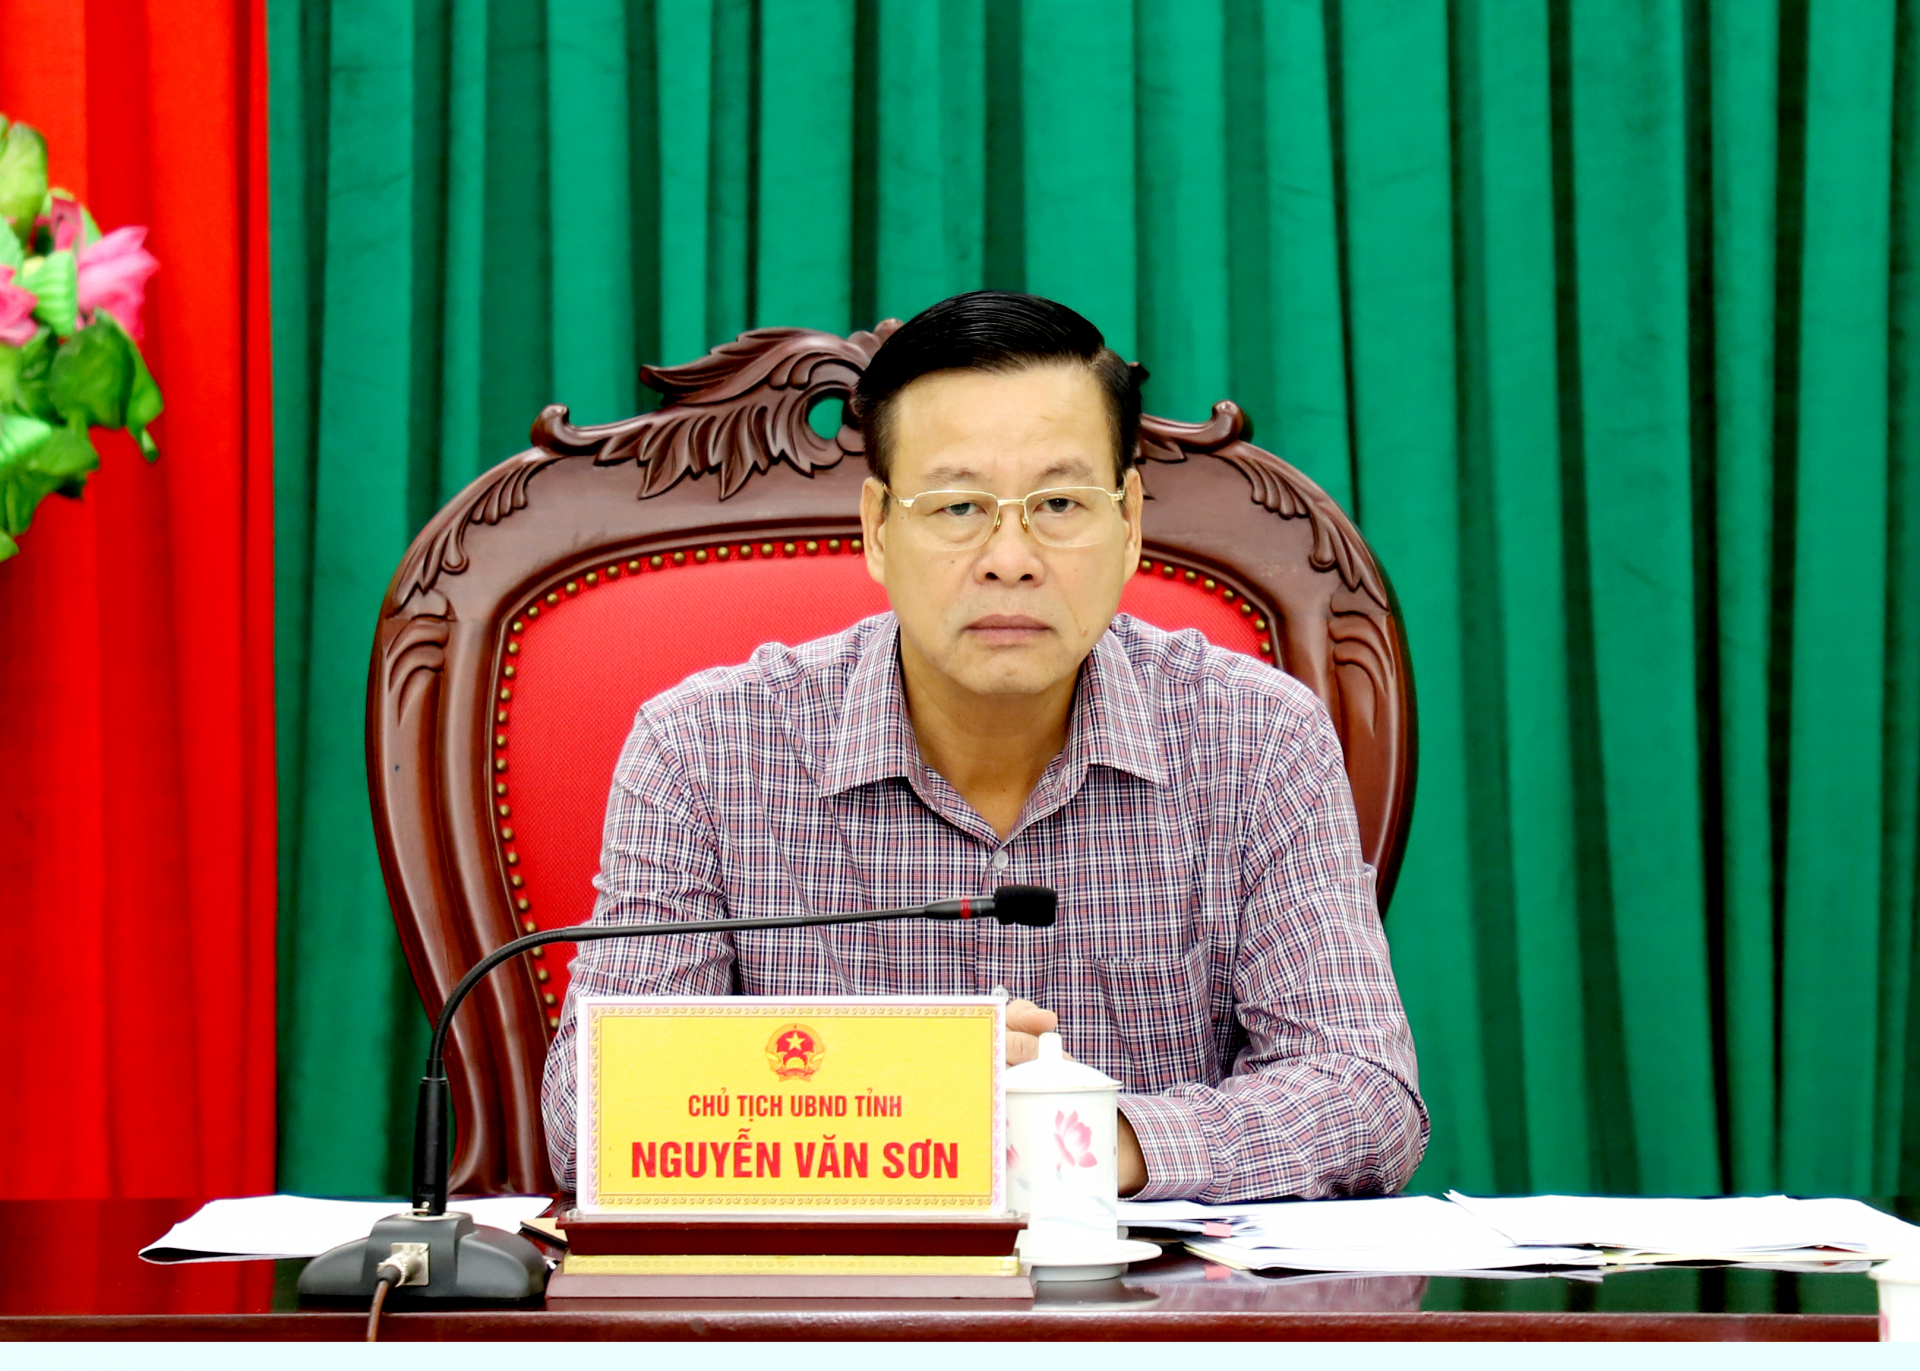 Chủ tịch UBND tỉnh Nguyễn Văn Sơn nghe kiến nghị của công dân.